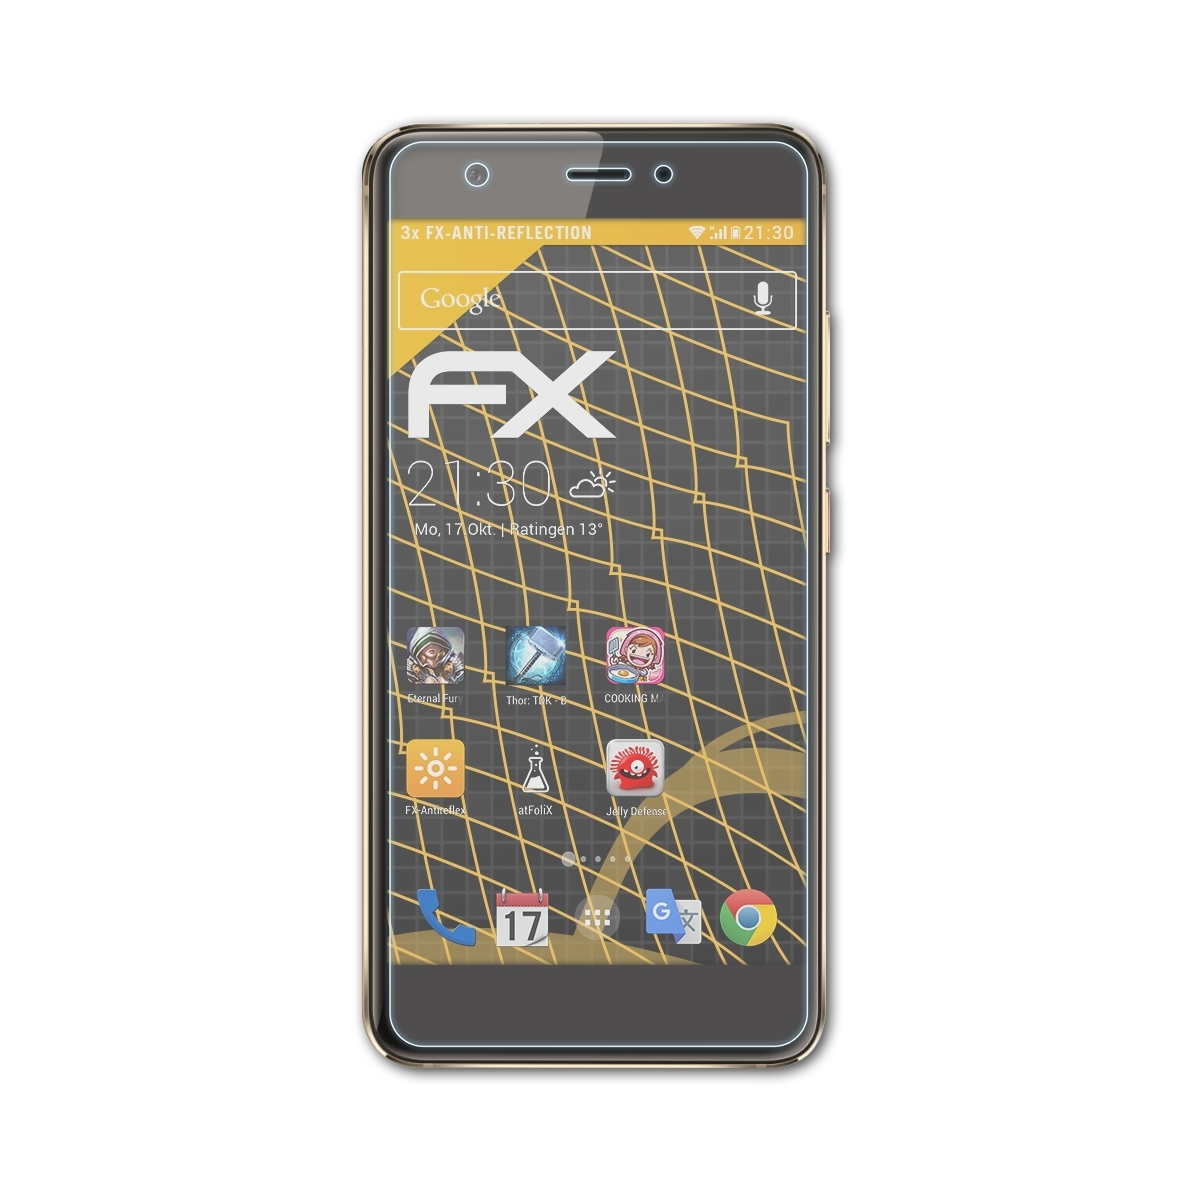 Huawei FX-Antireflex Nova) 3x Displayschutz(für ATFOLIX